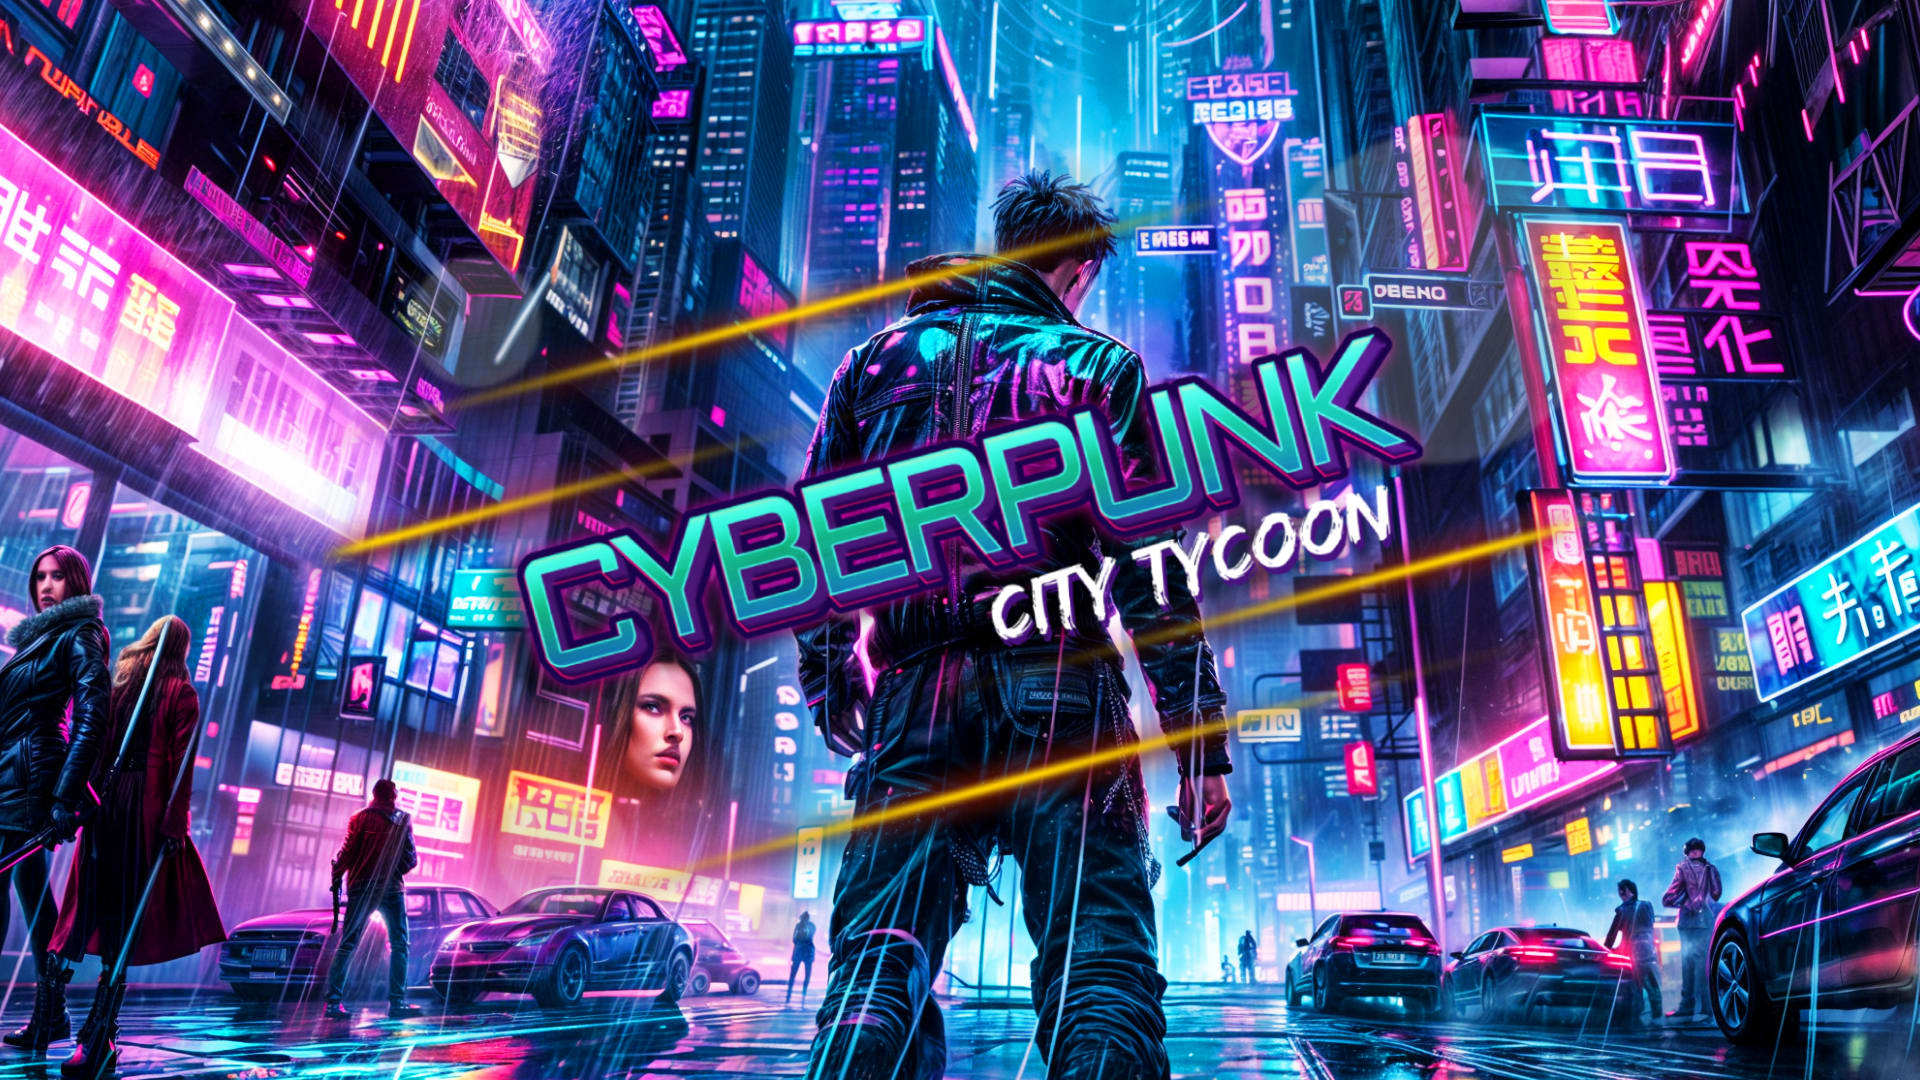 Cyberpunk City Tycoon